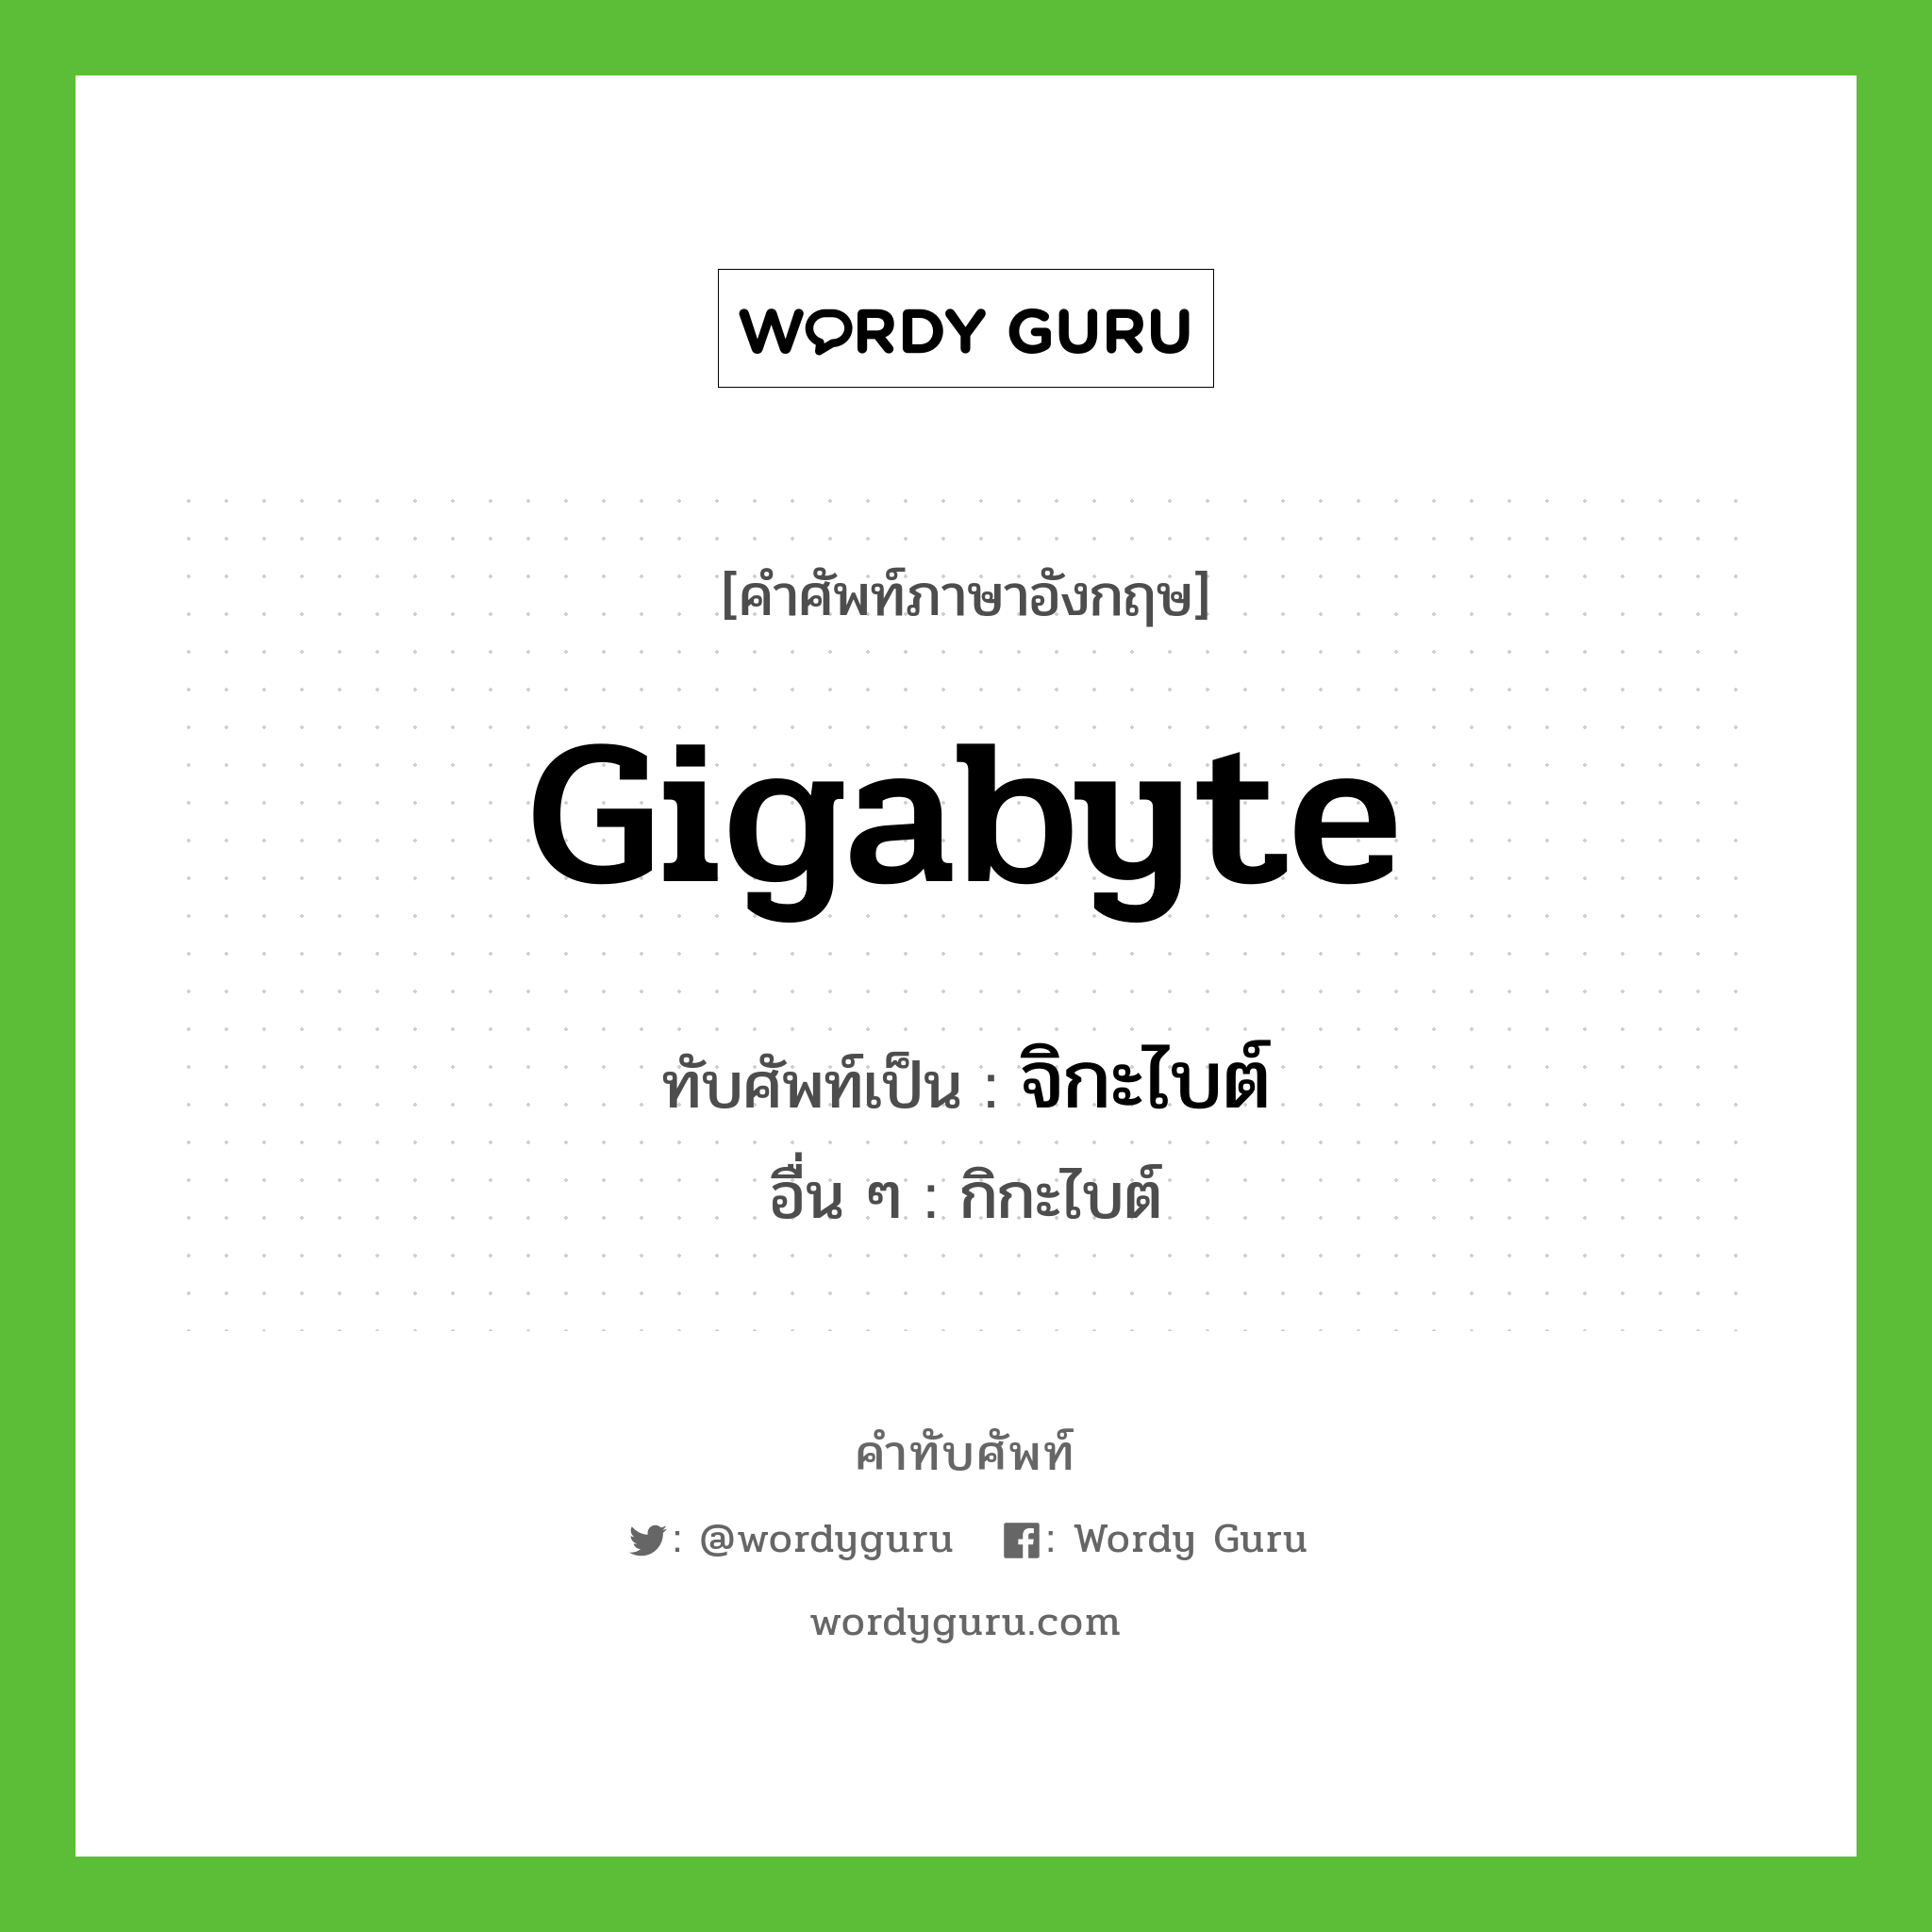 gigabyte เขียนเป็นคำไทยว่าอะไร?, คำศัพท์ภาษาอังกฤษ gigabyte ทับศัพท์เป็น จิกะไบต์ อื่น ๆ กิกะไบต์